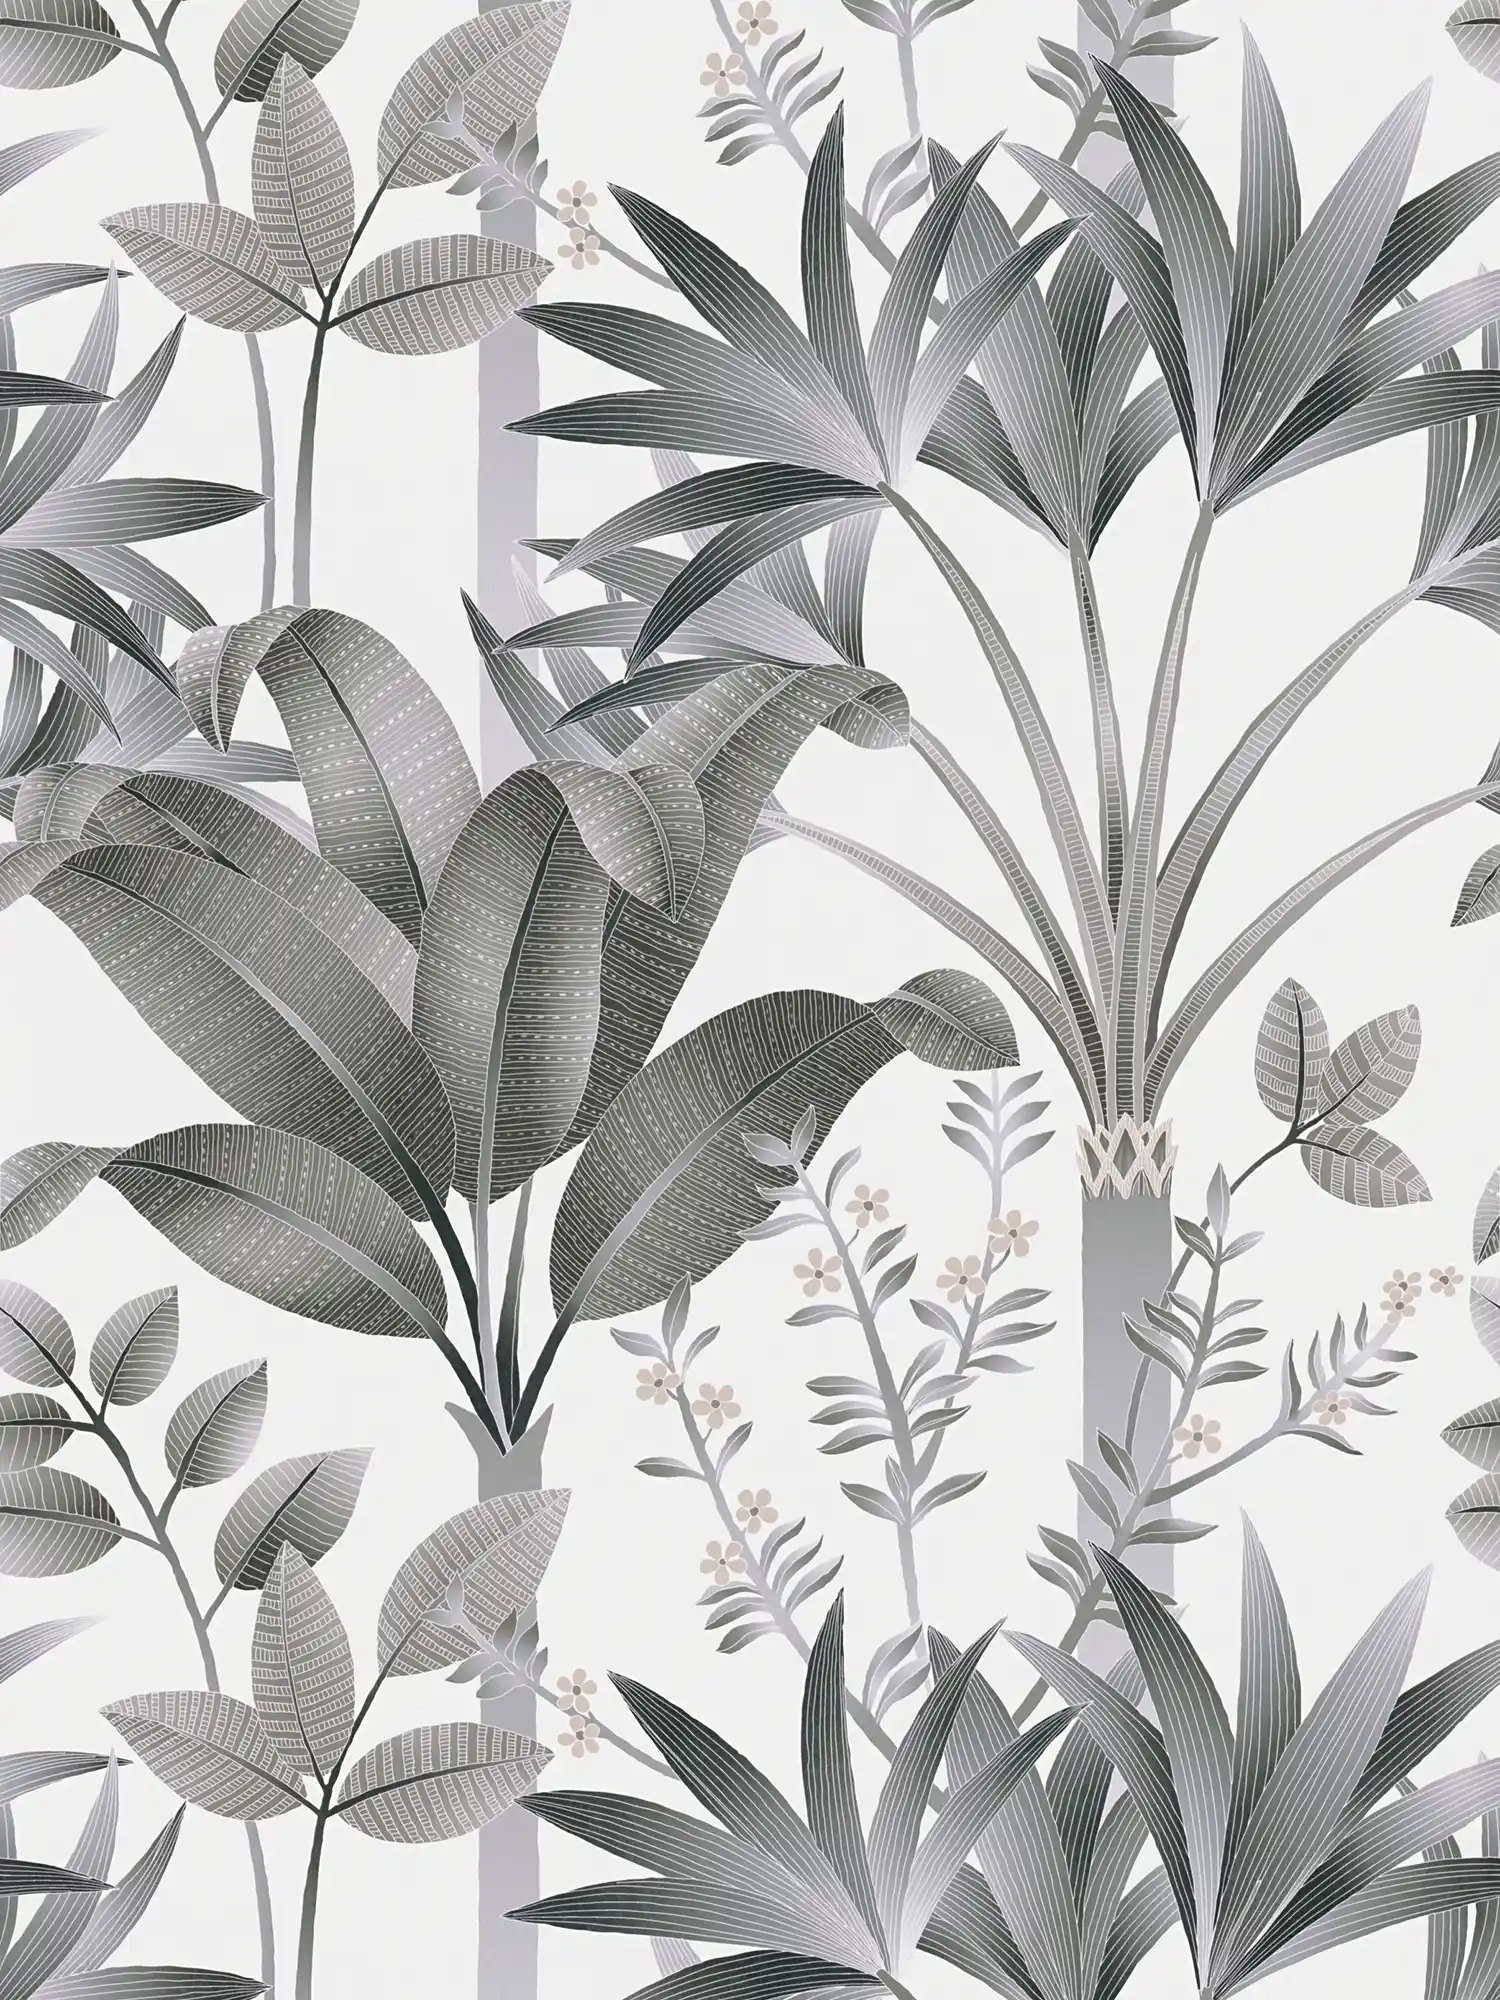 Florale Vliestapete mit Blättermuster – Grau, Schwarz, Weiß
